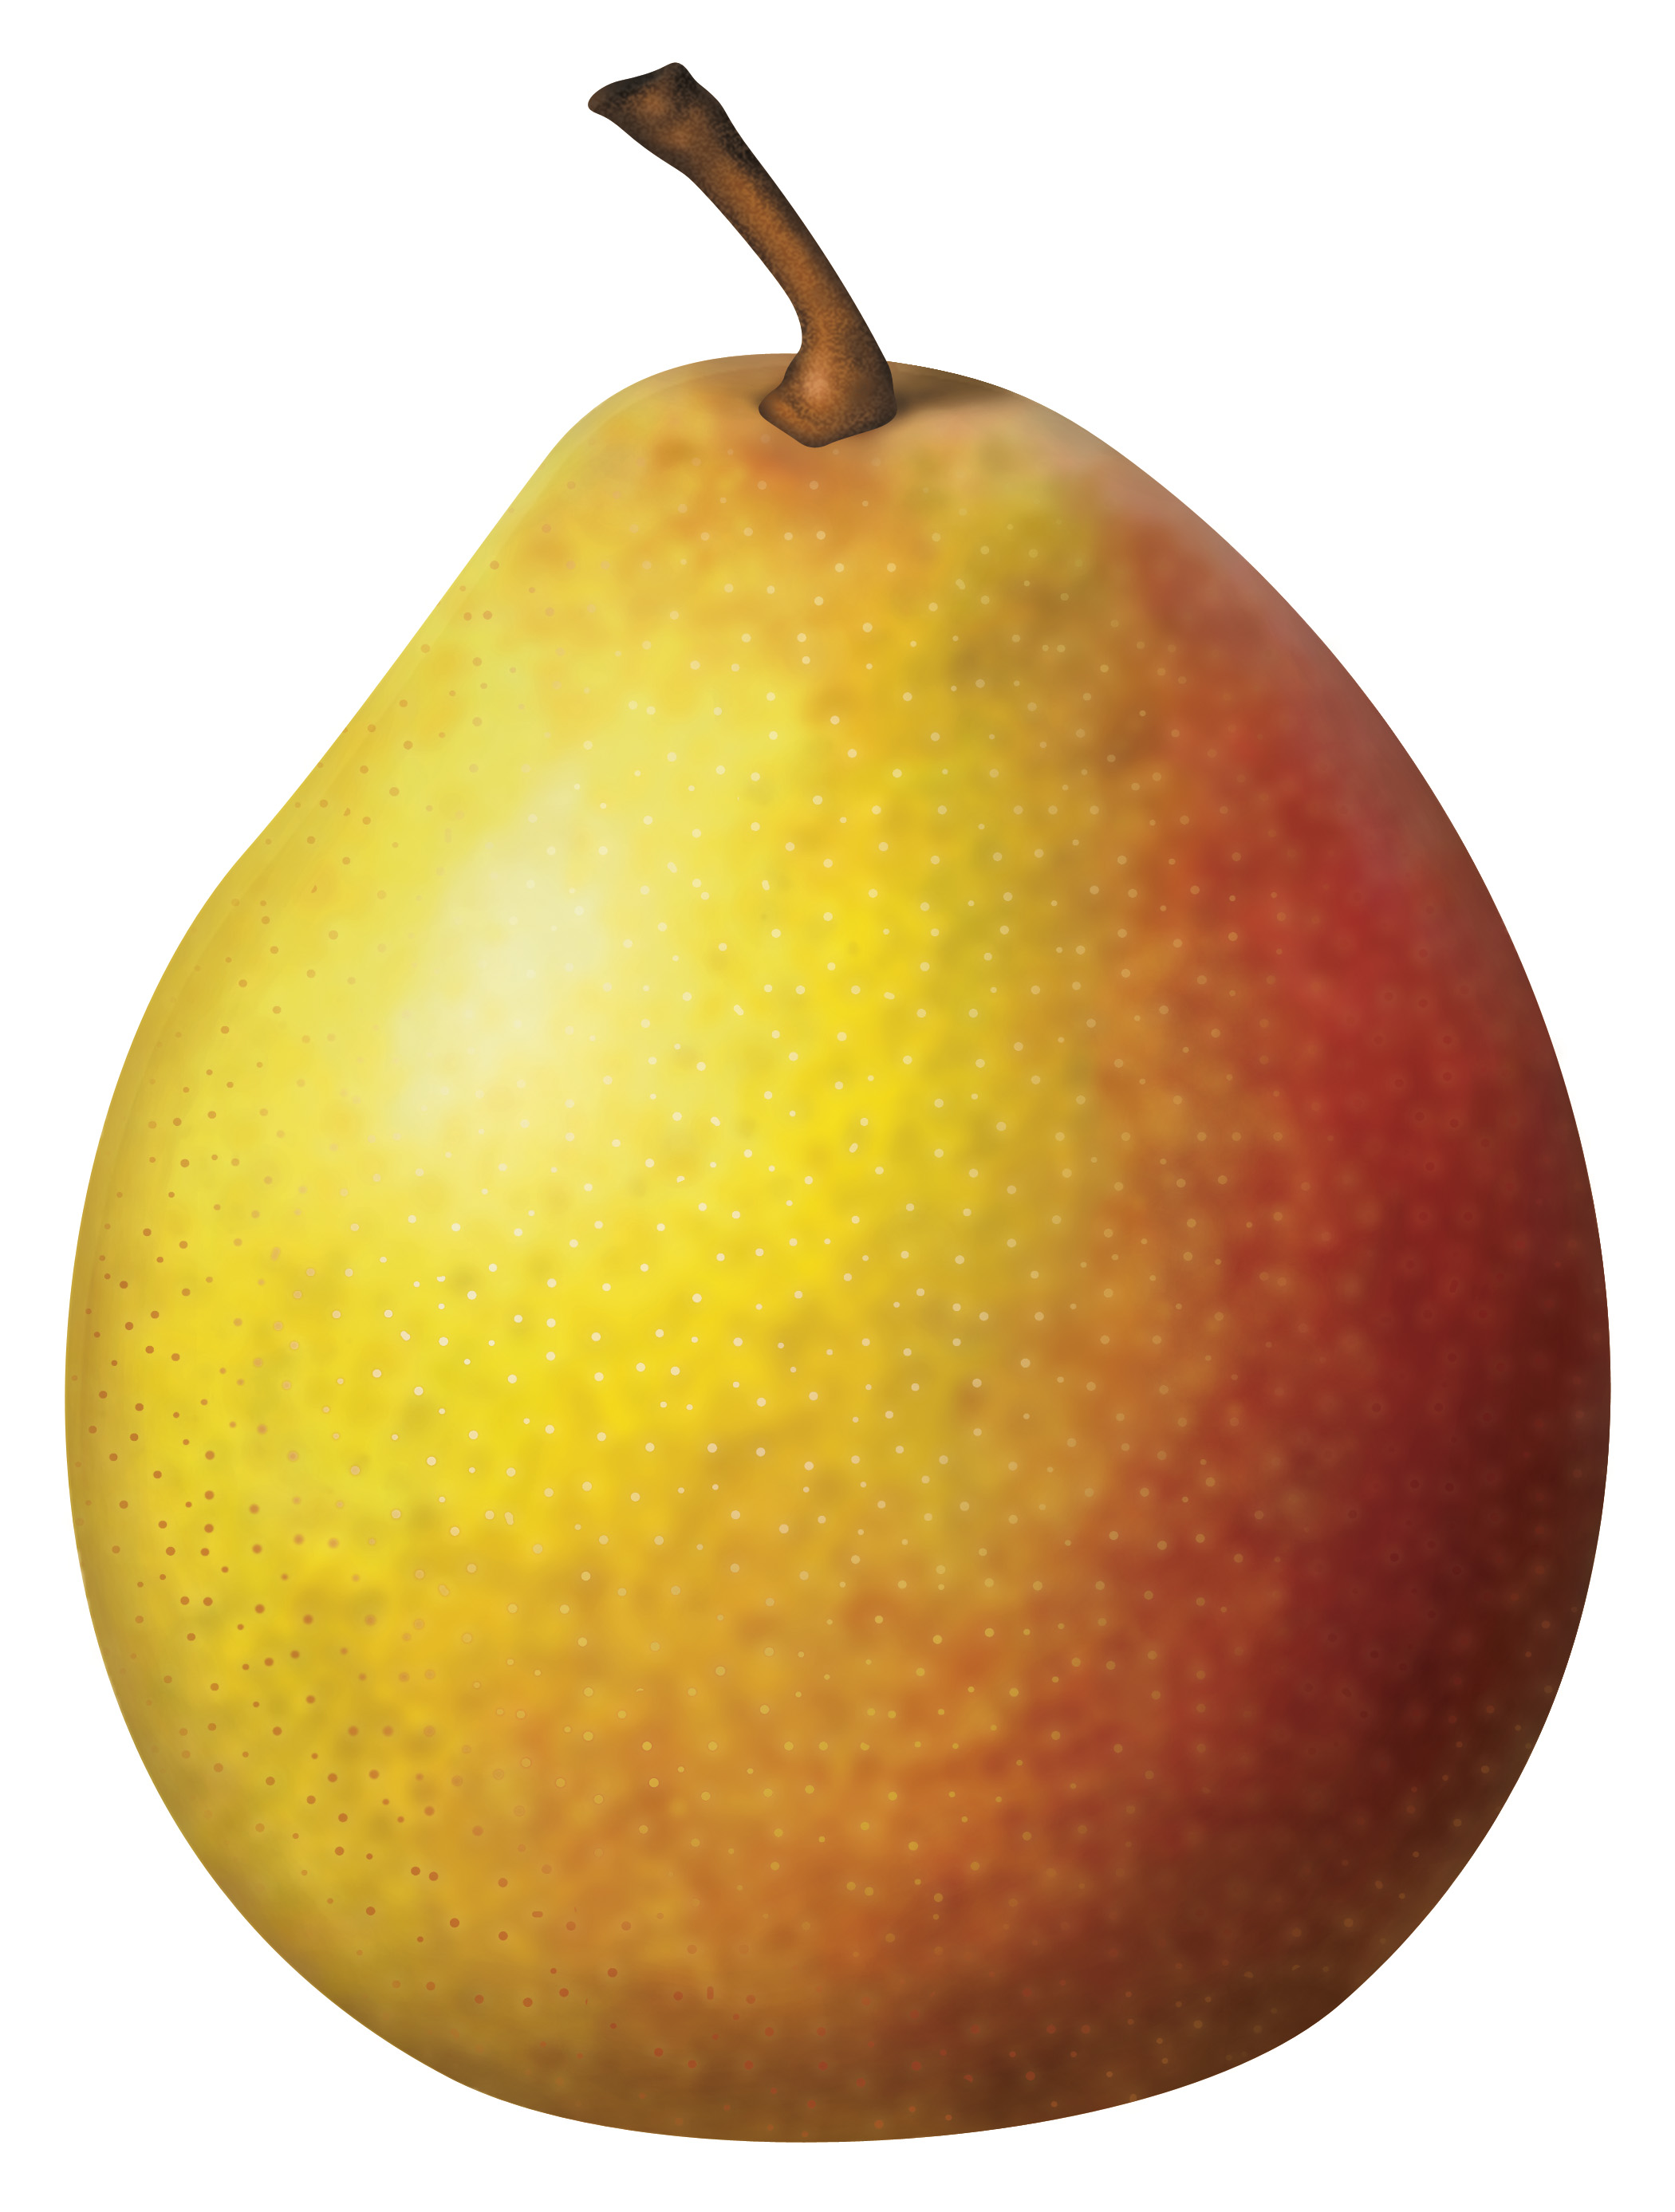 Pear Varieties (illustration) – California Pears